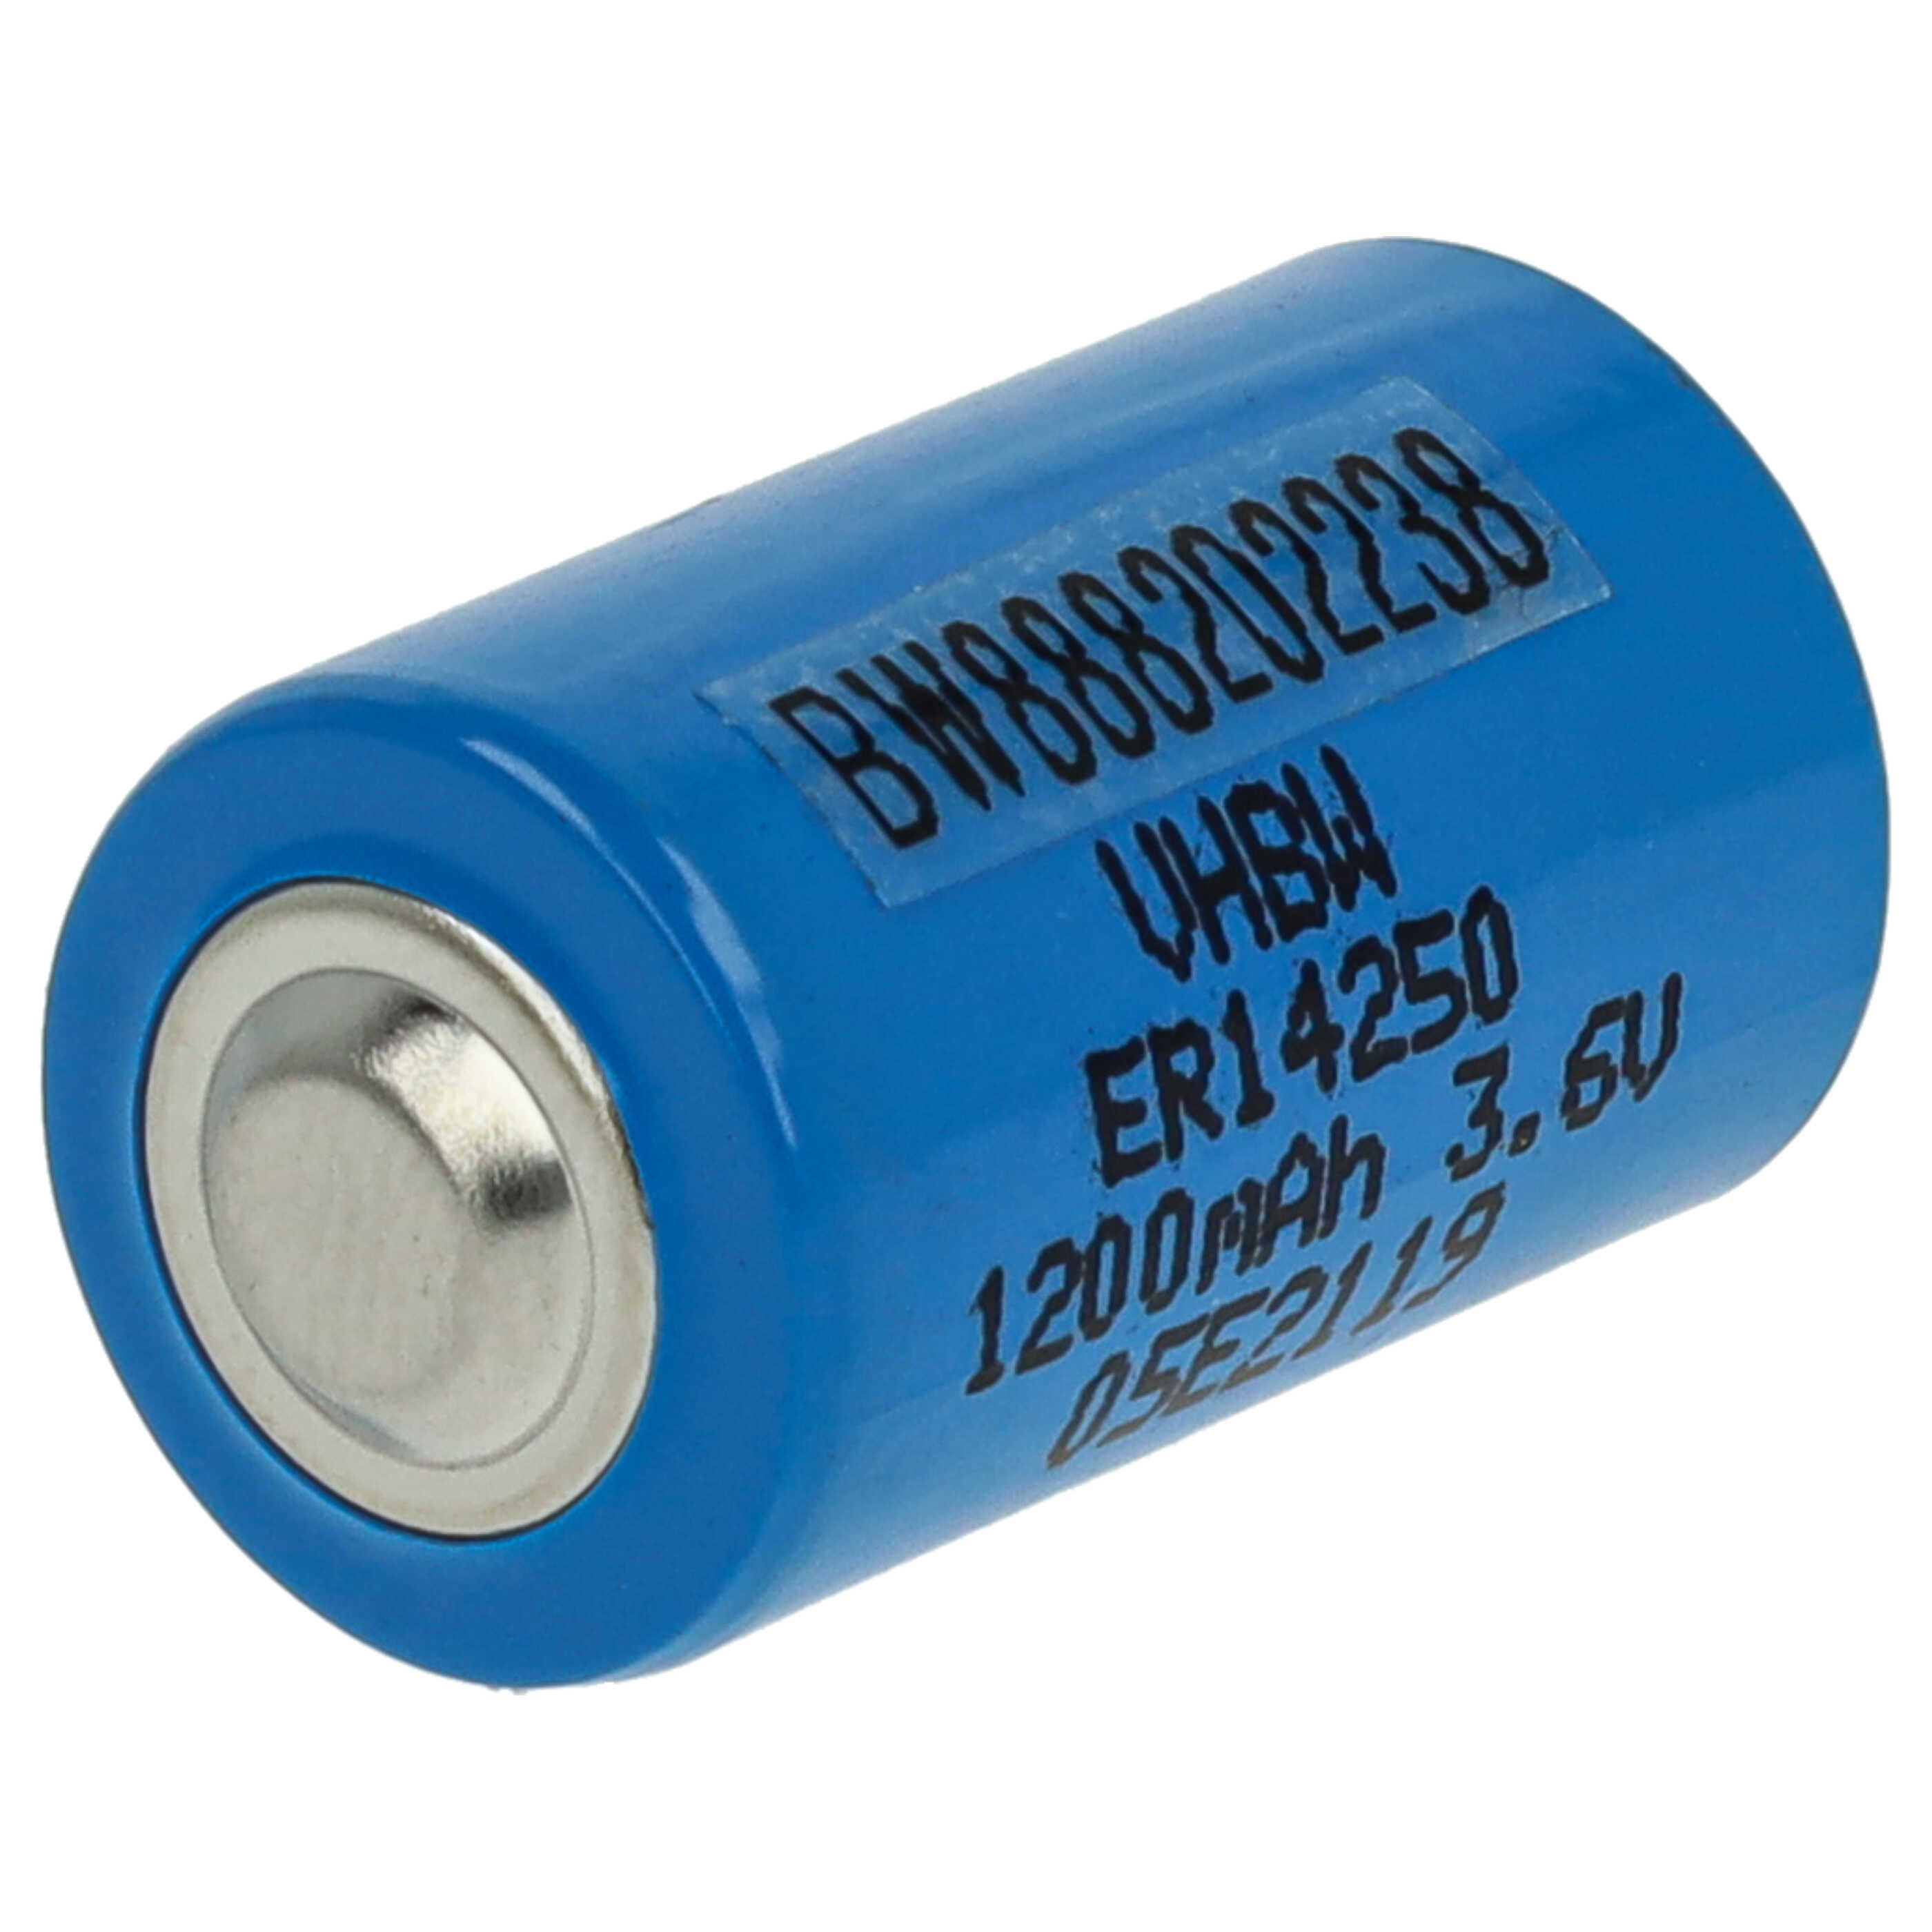 Batería reemplaza 1/2AA, 1770-XZ, 3B26, 418-0076, 60-0576-100 para ER14250 especial - 1200 mAh 3,6 V Li-SOCl2